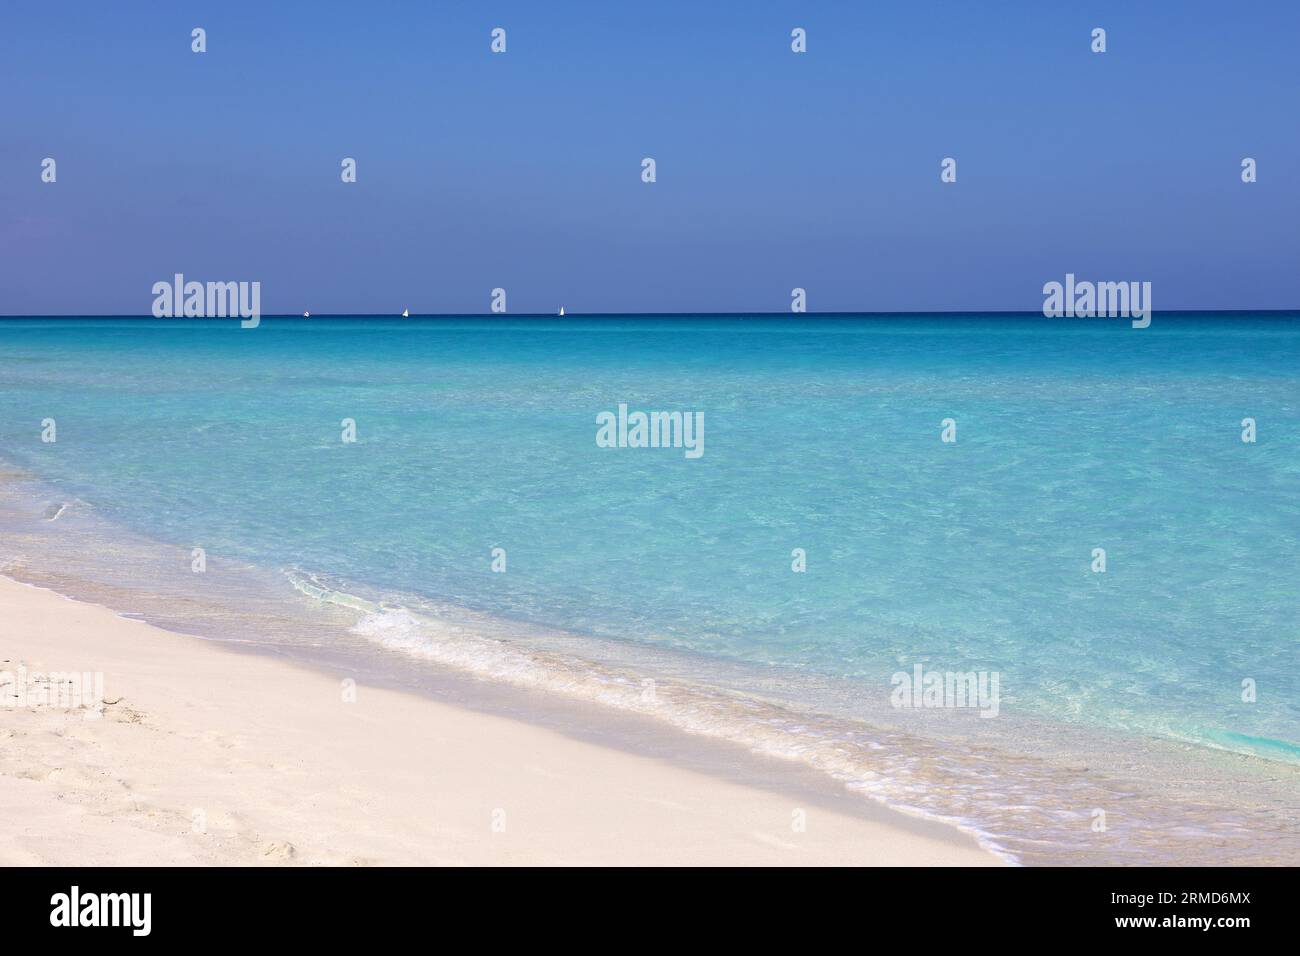 Leerer Strand mit weißem Sand, Blick auf azurblaue Wellen und blauen Himmel mit Wolken. Karibikküste, Hintergrund für Urlaub in paradiesischer Natur Stockfoto